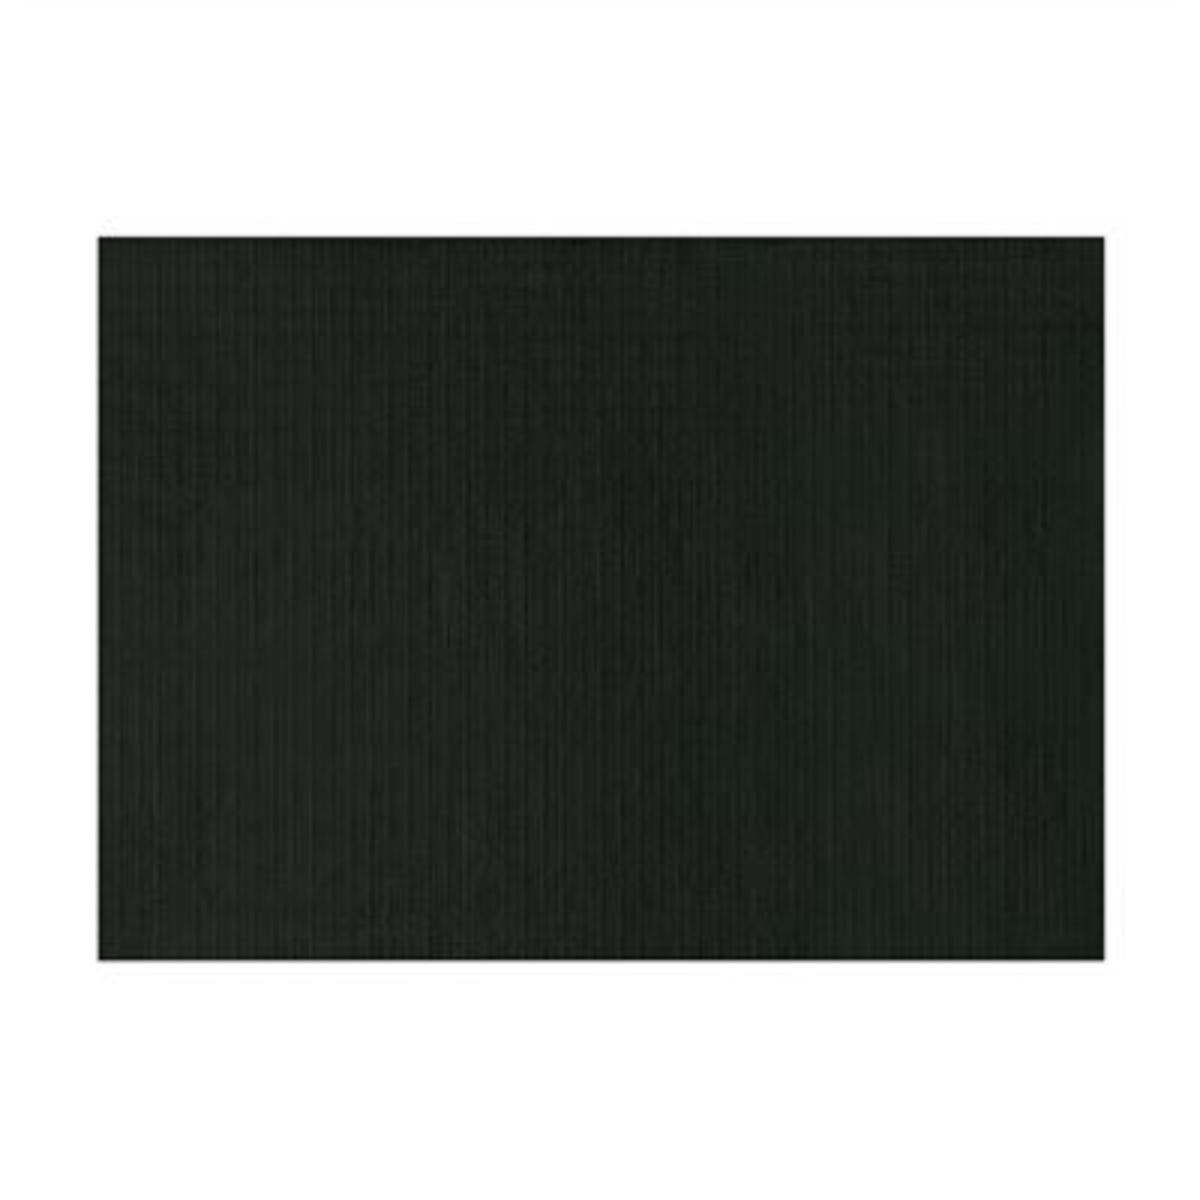 Set de table 31x43 cm noir x 2000 Garcia de Pou - 101.91